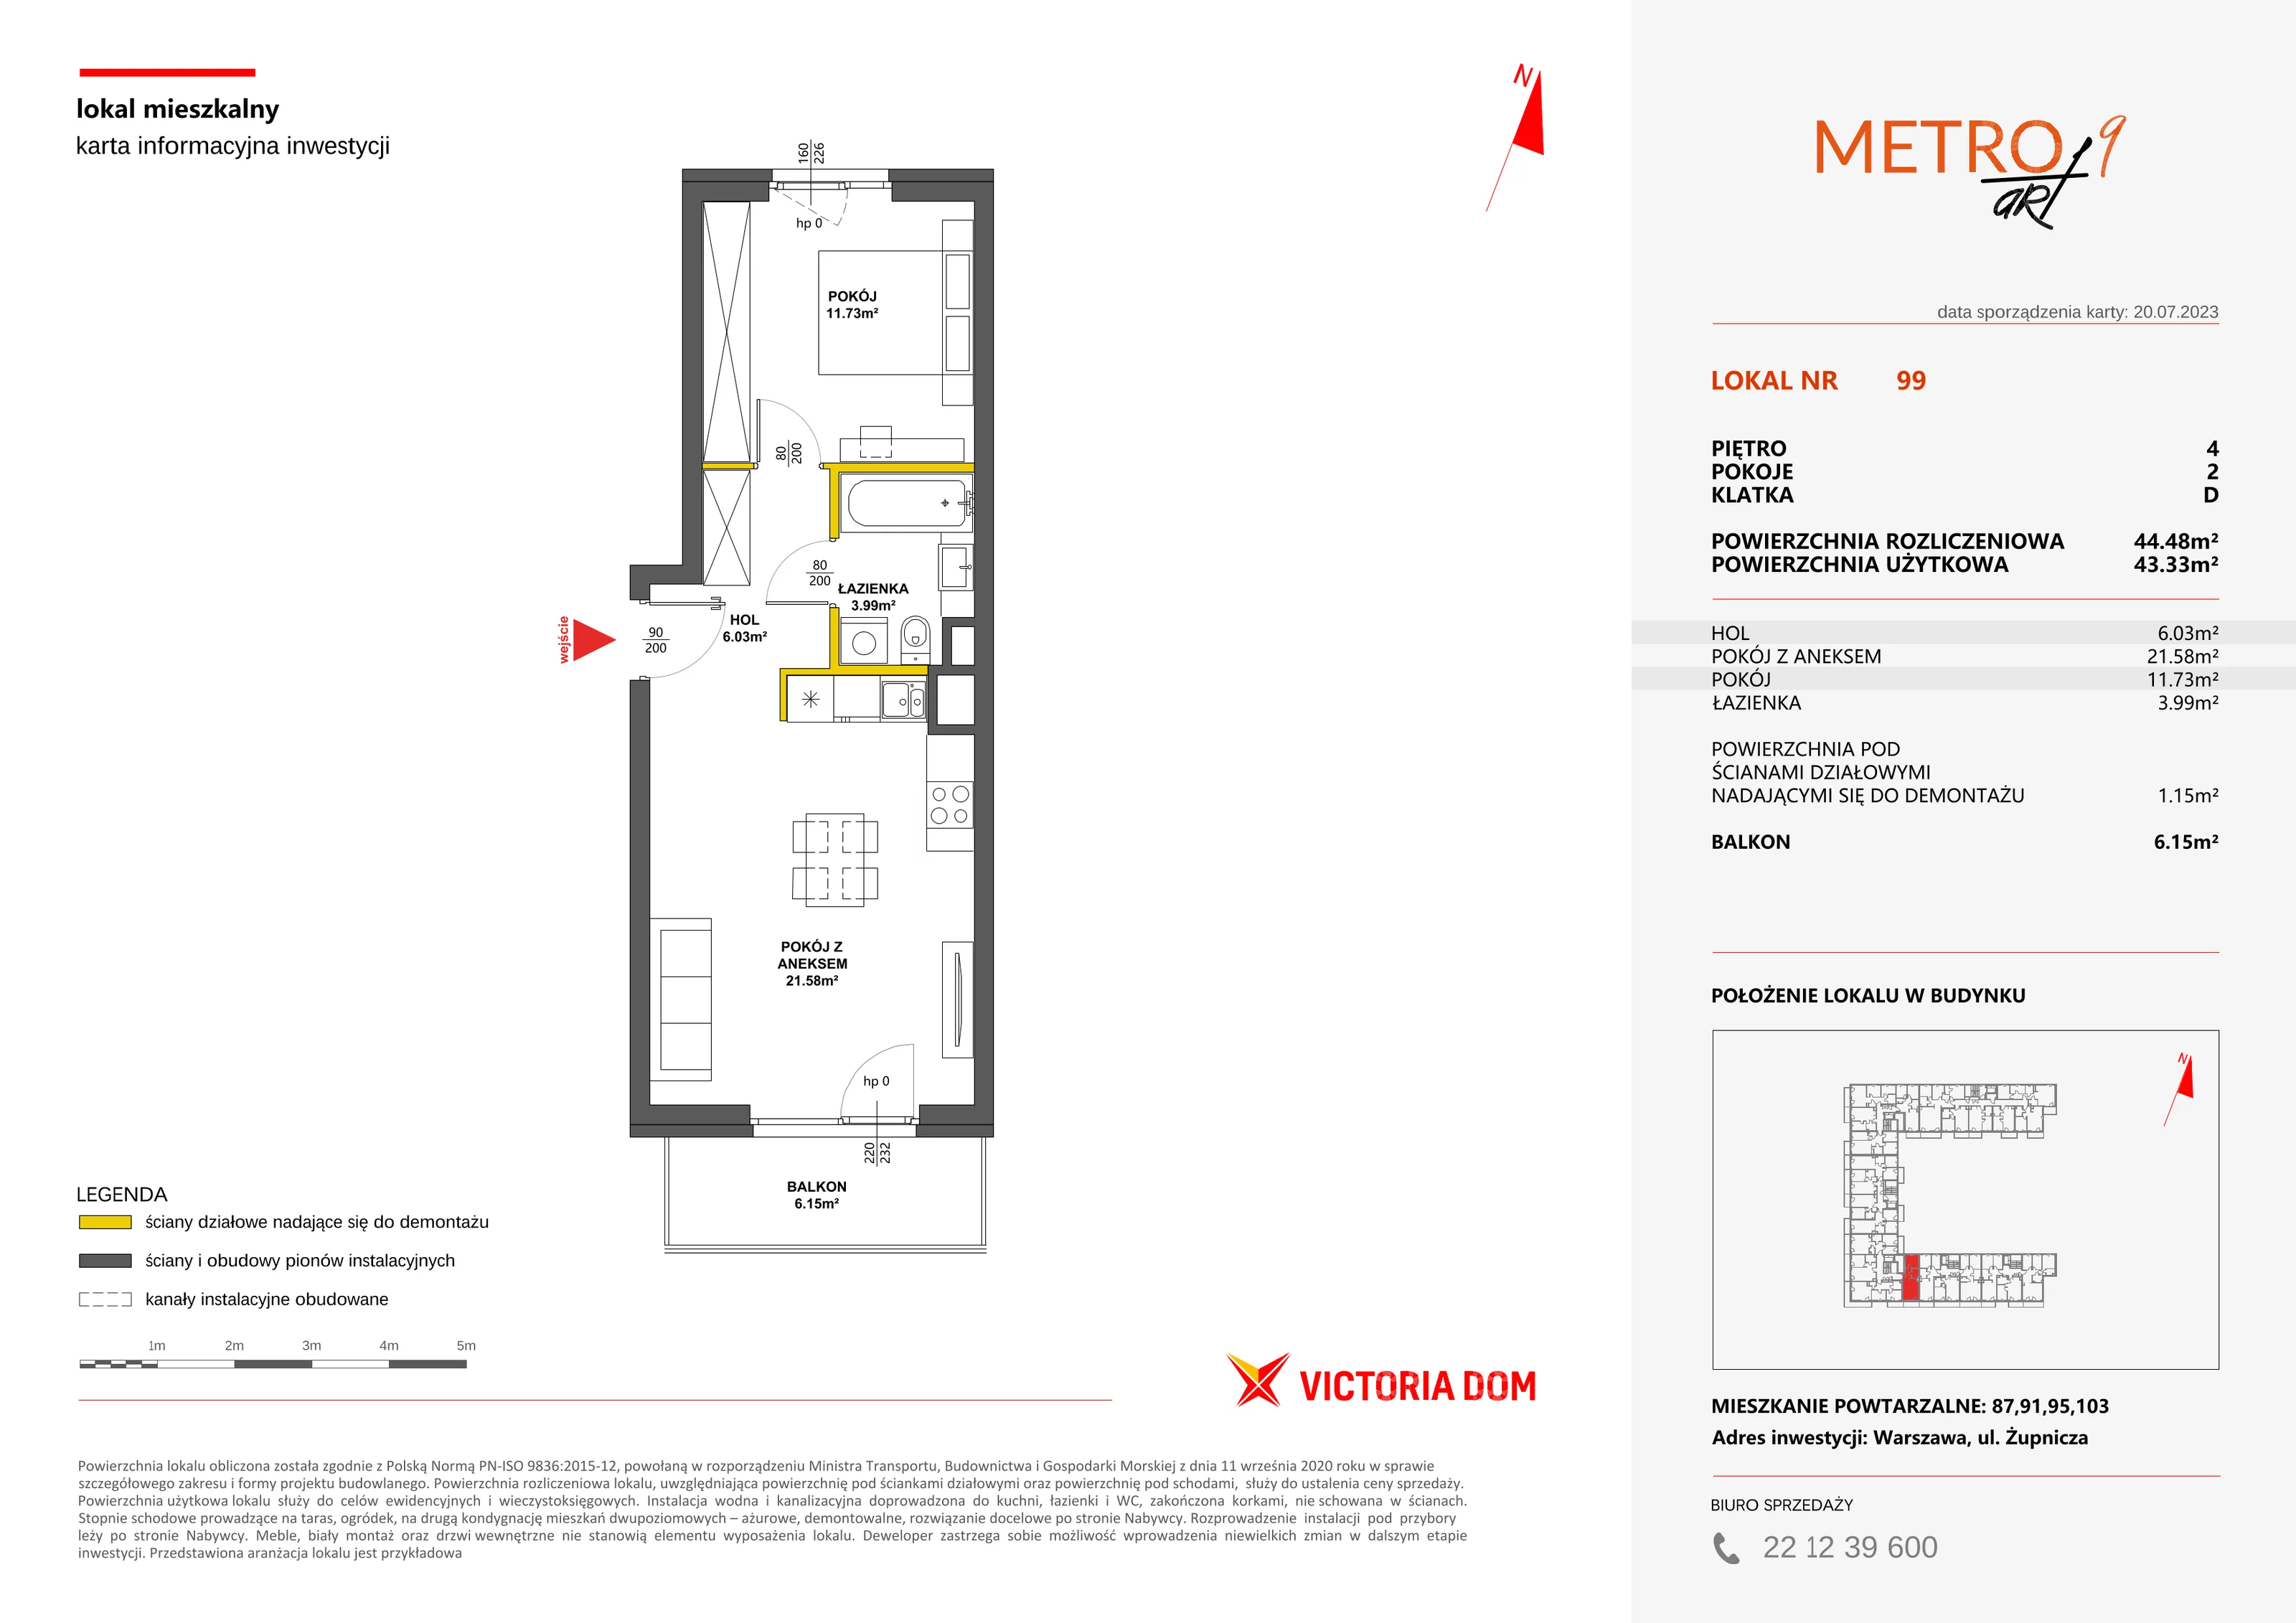 Mieszkanie 44,48 m², piętro 4, oferta nr IX/99, Metro Art, Warszawa, Praga Południe, Kamionek, ul. Żupnicza